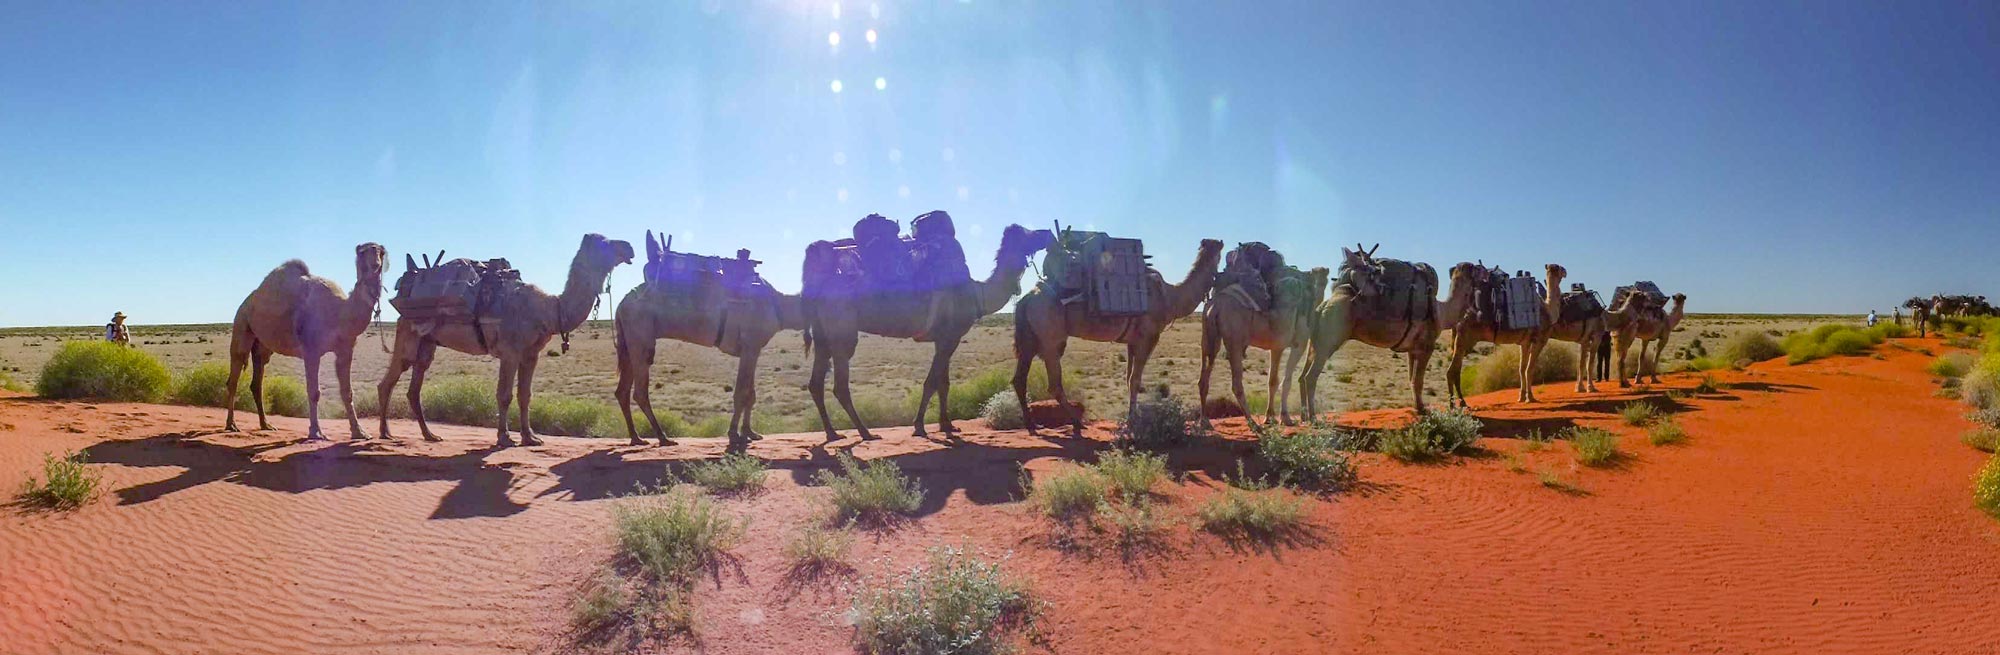 Camels Australia